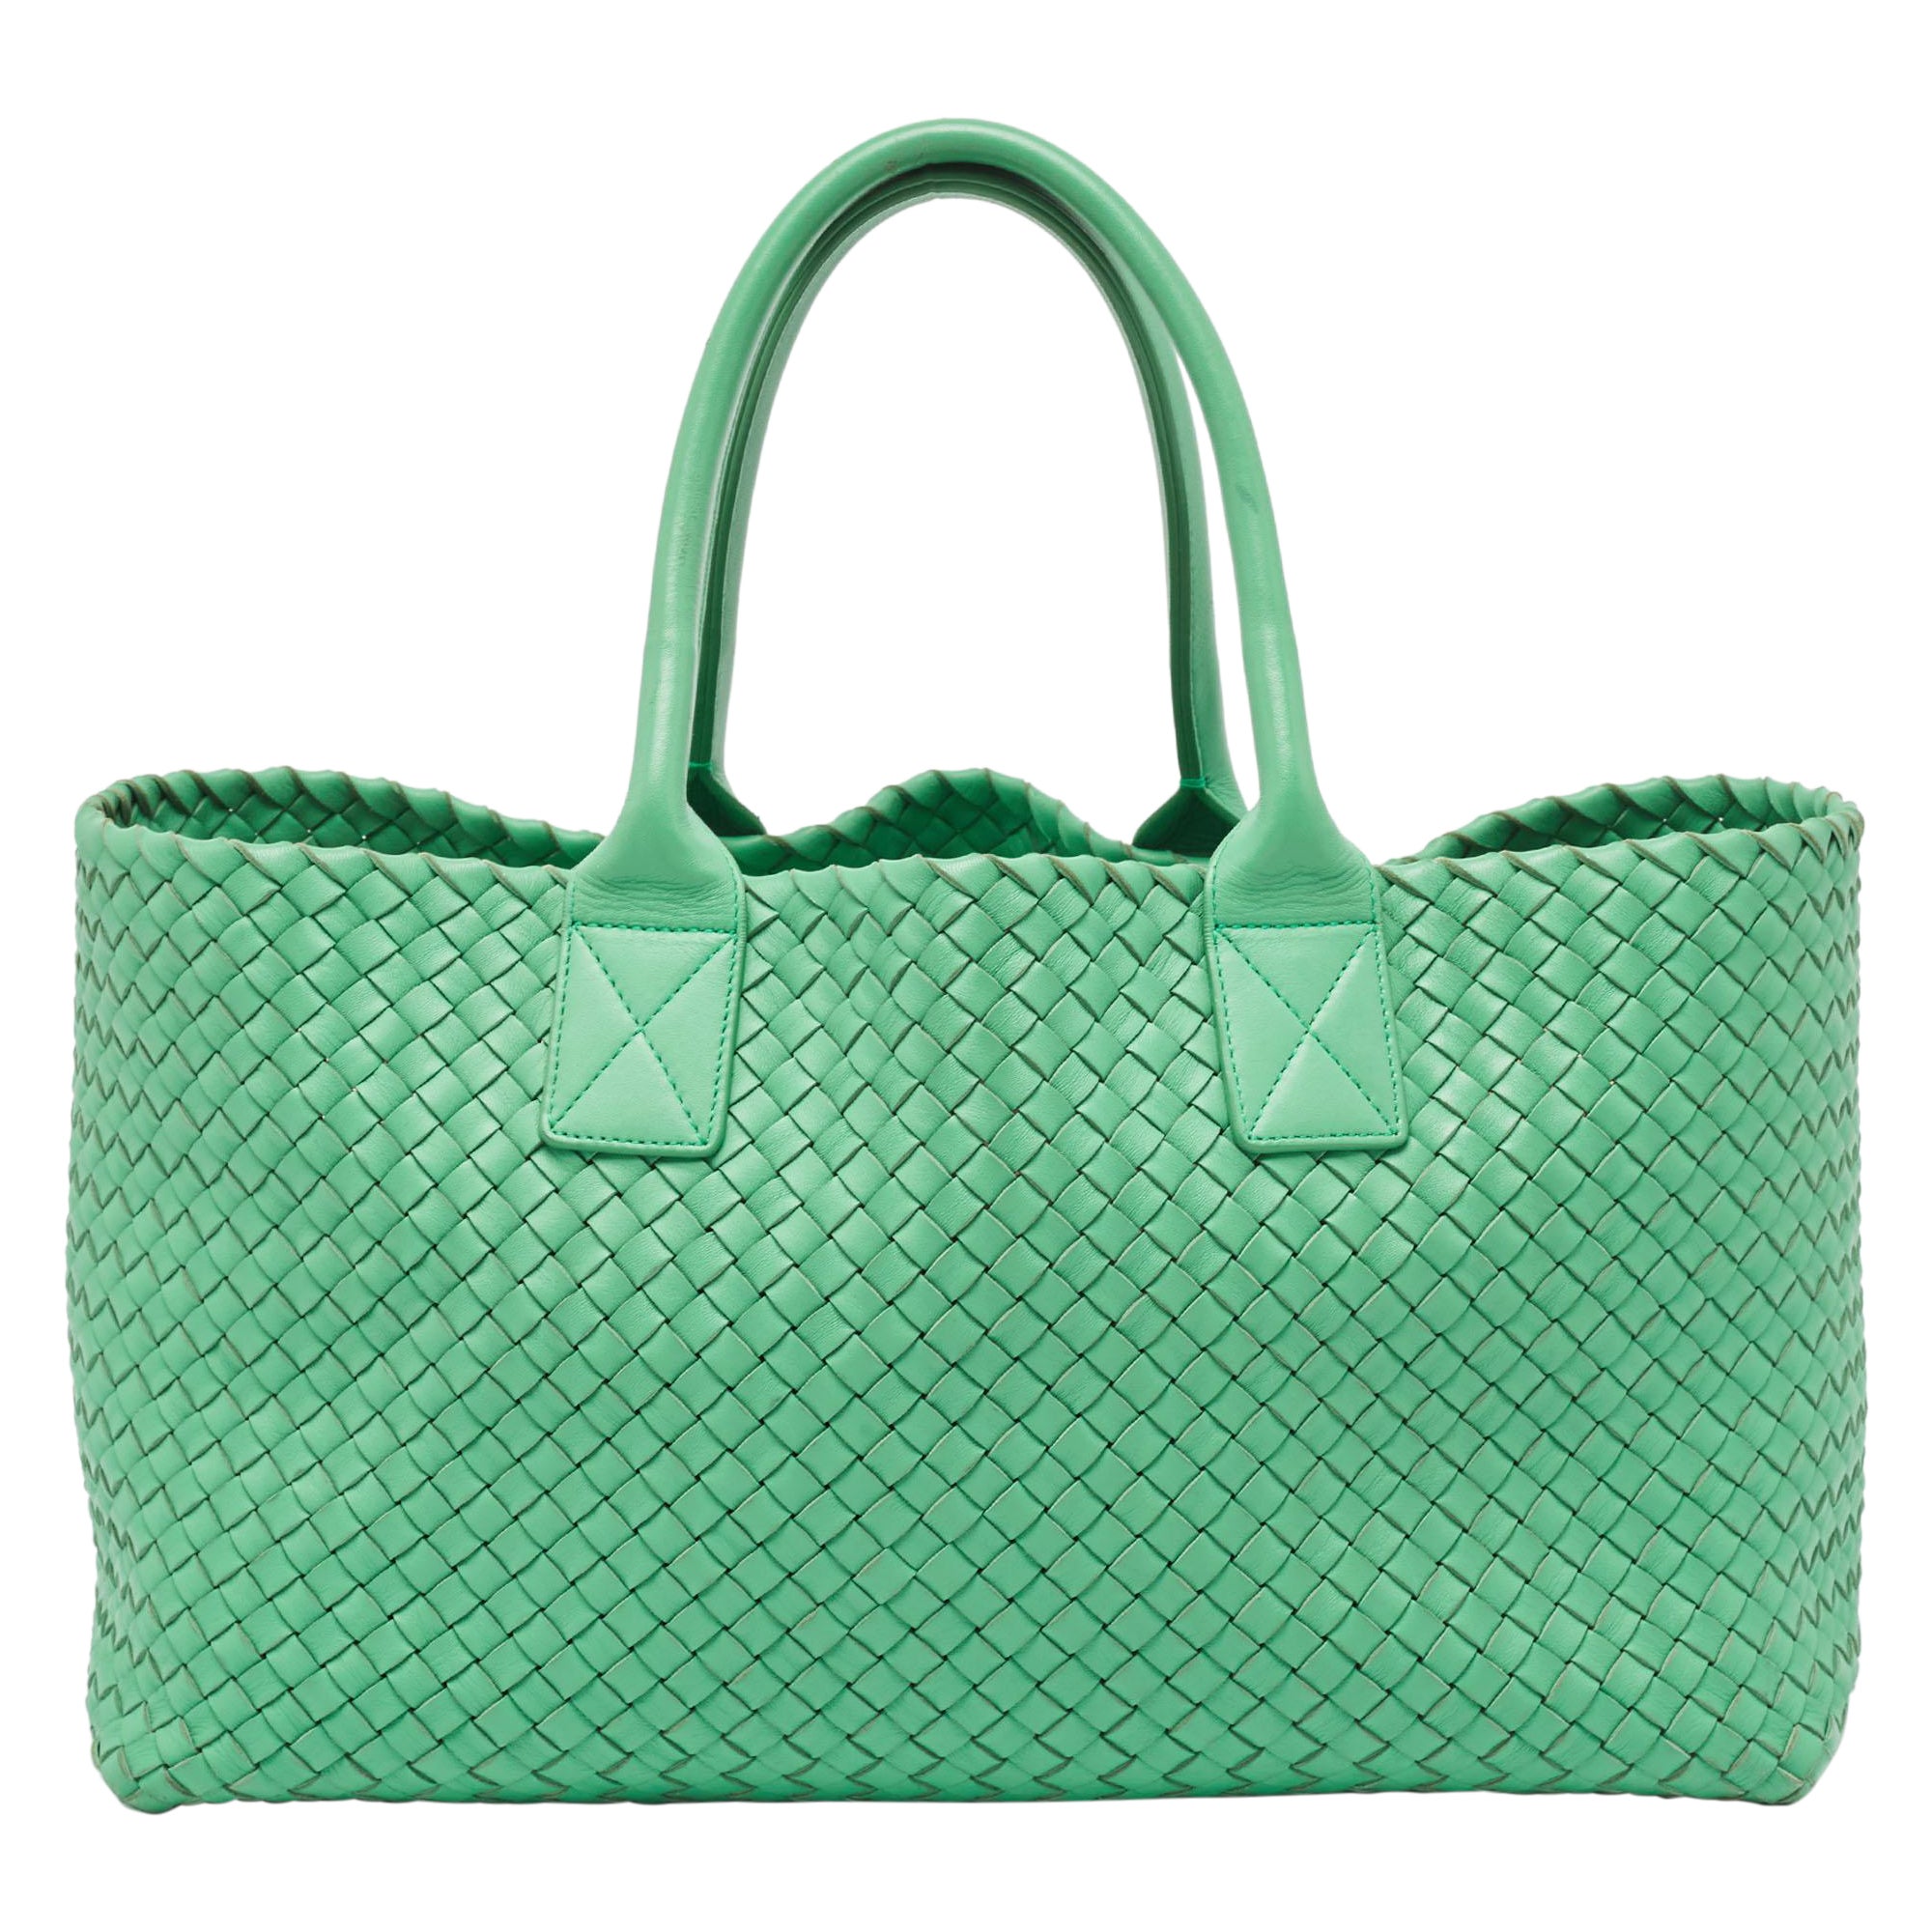 Bottega Veneta Green Intrecciato Leather  Limited Edition 0147/1000 Cabat Tote For Sale